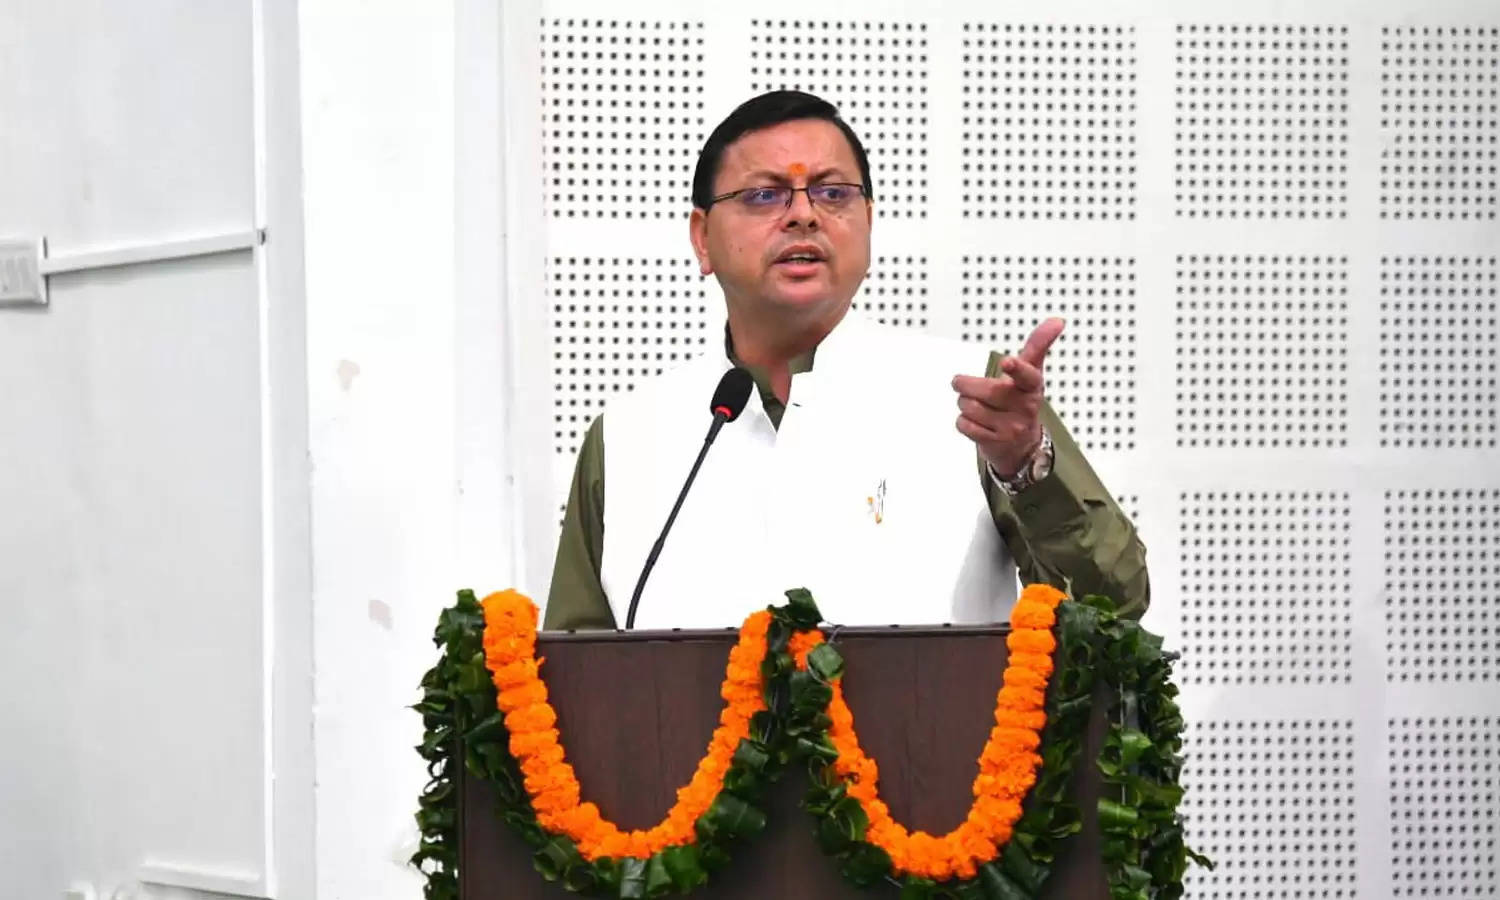 CM Dhami ने किया हिमालयी पारिस्थितिकी तंत्र’ विचार मंथन कार्यक्रम में प्रतिभाग